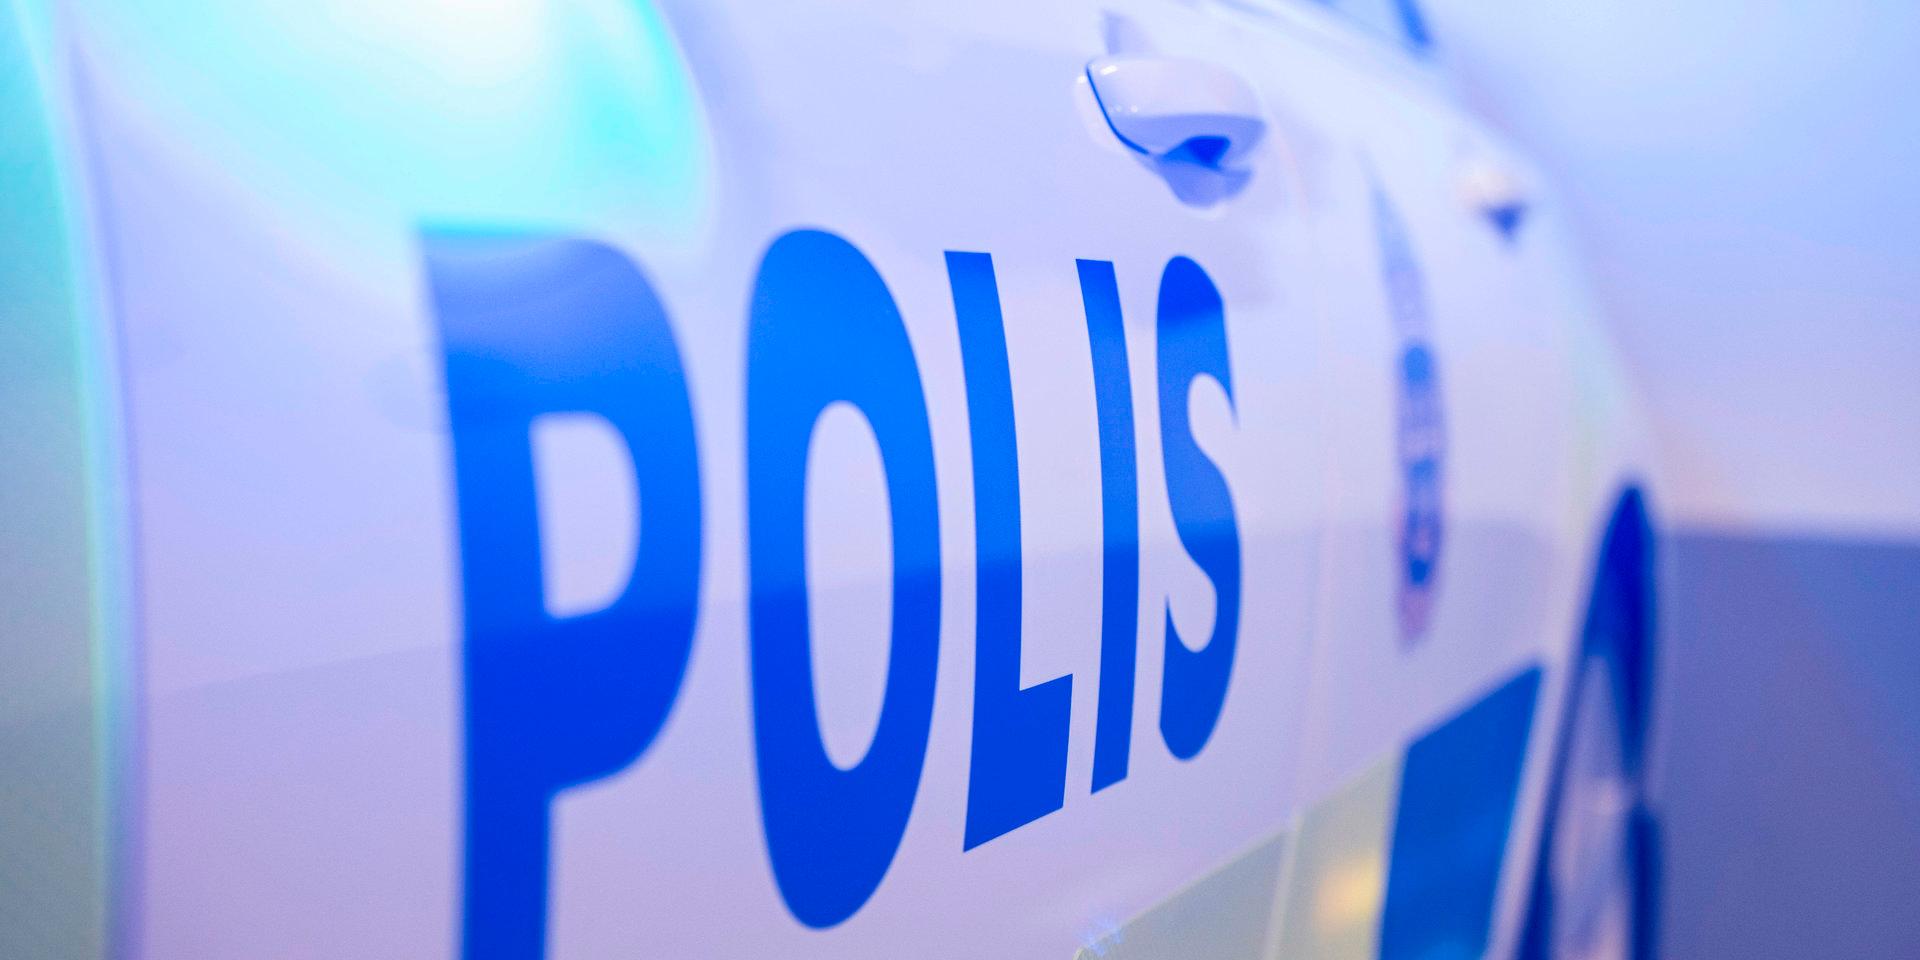 En man boende i Halmstads kommun har begärts häktad misstänkt för det uppmärksammade mordförsöket i Norberg.